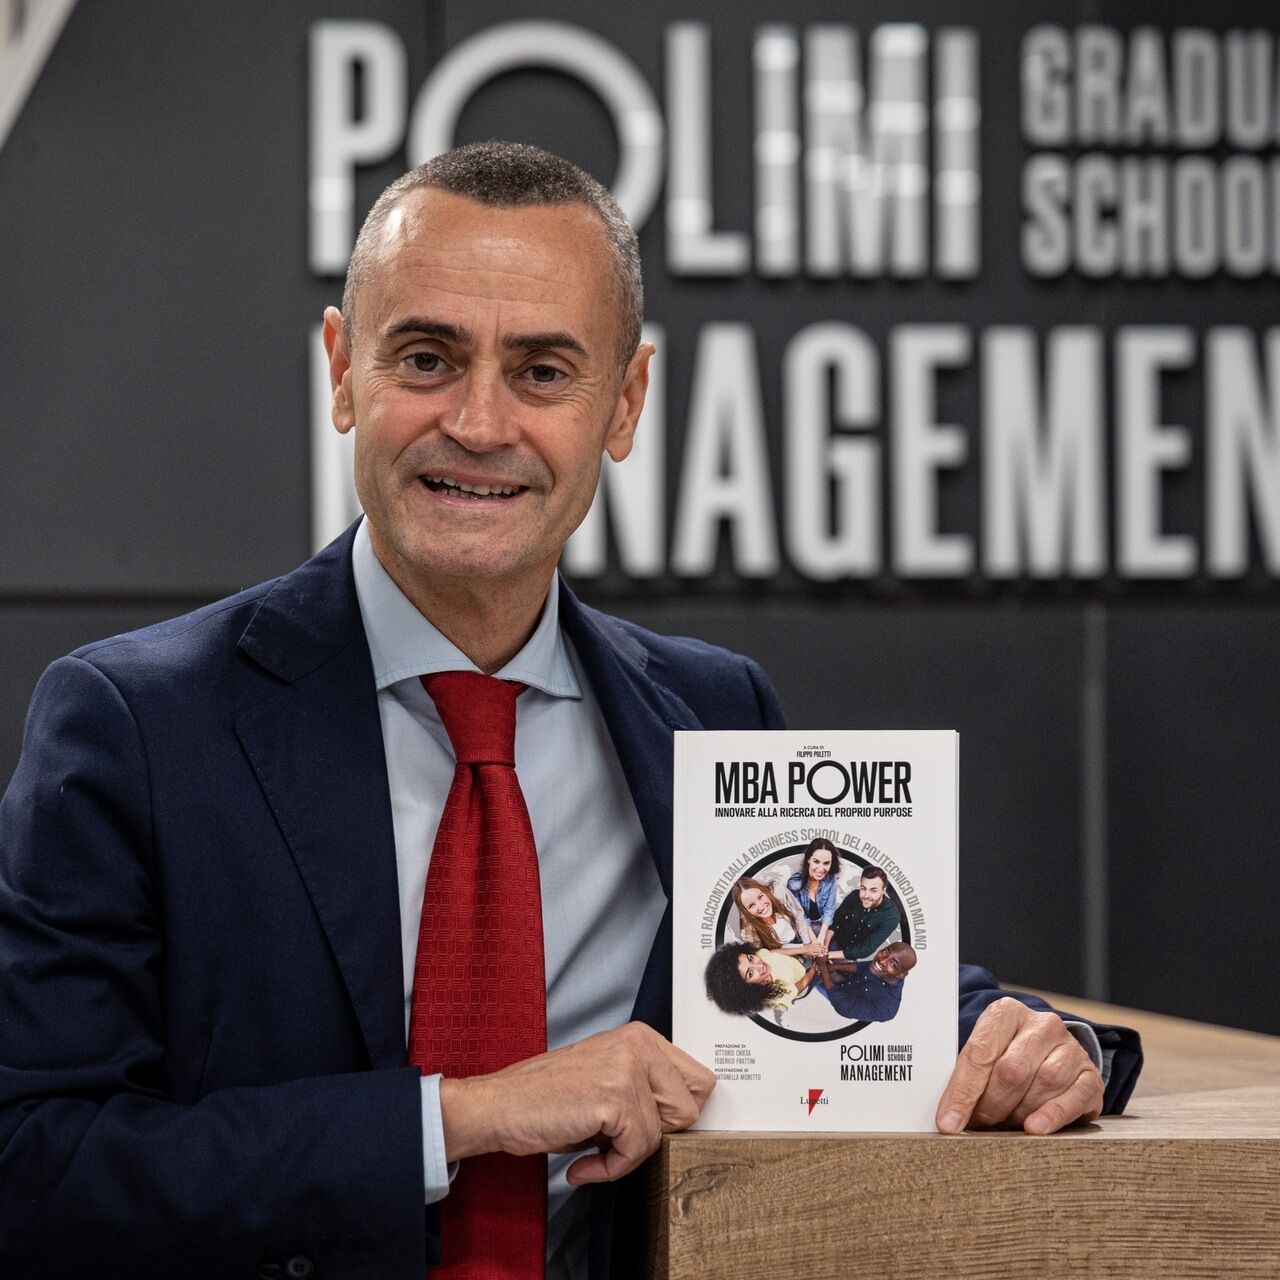 MBA Power: den professionelle journalist Filippo Poletti er forfatteren til bogen "MBA Power: innovating in search of one's purpose": han fortæller historierne om 101 ledere i alderen mellem tredive og tres, som vendte tilbage til at studere og lære under pandemien